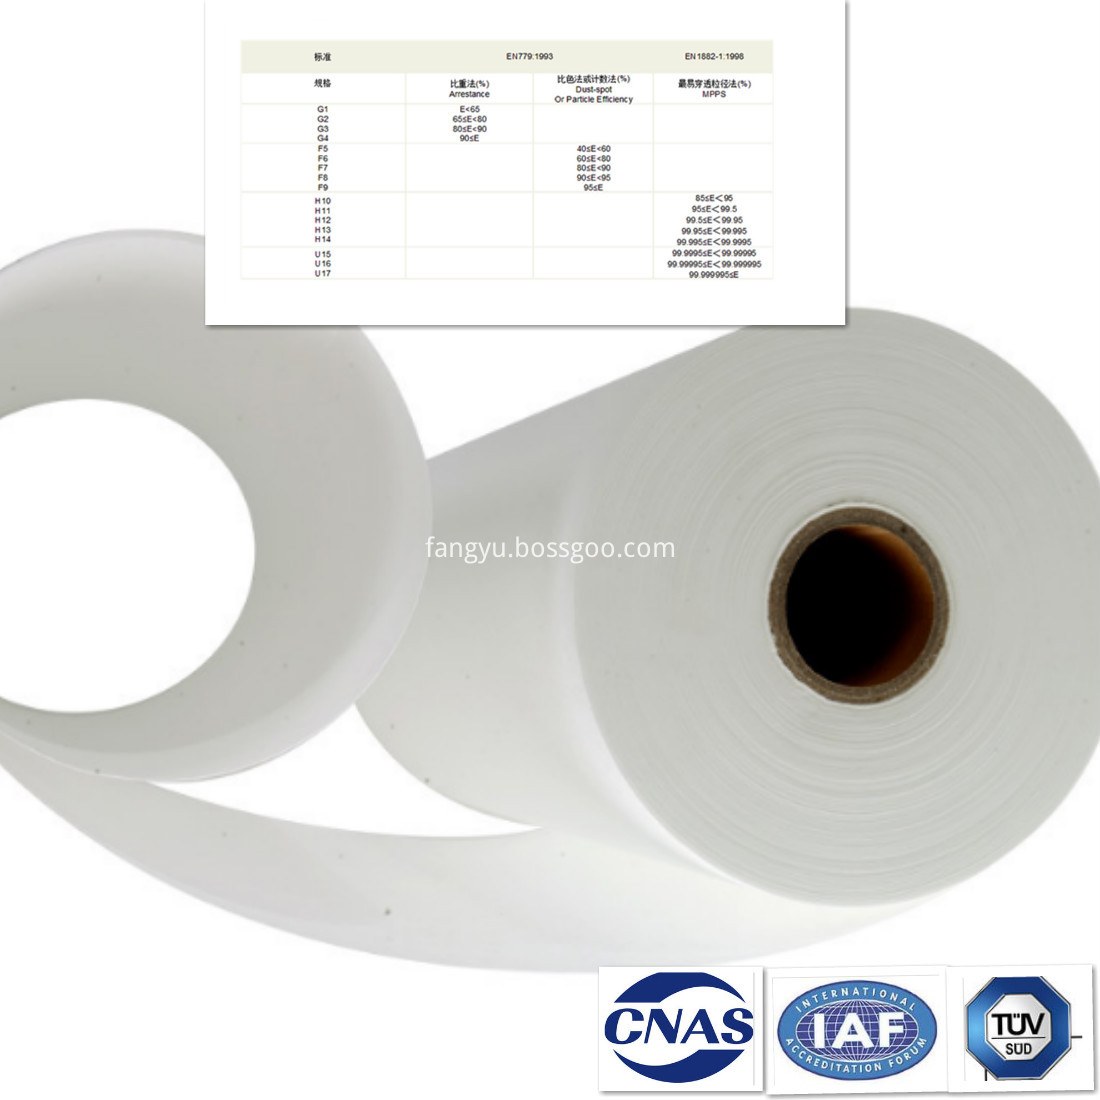 H13 fiberglass filter paper attribute